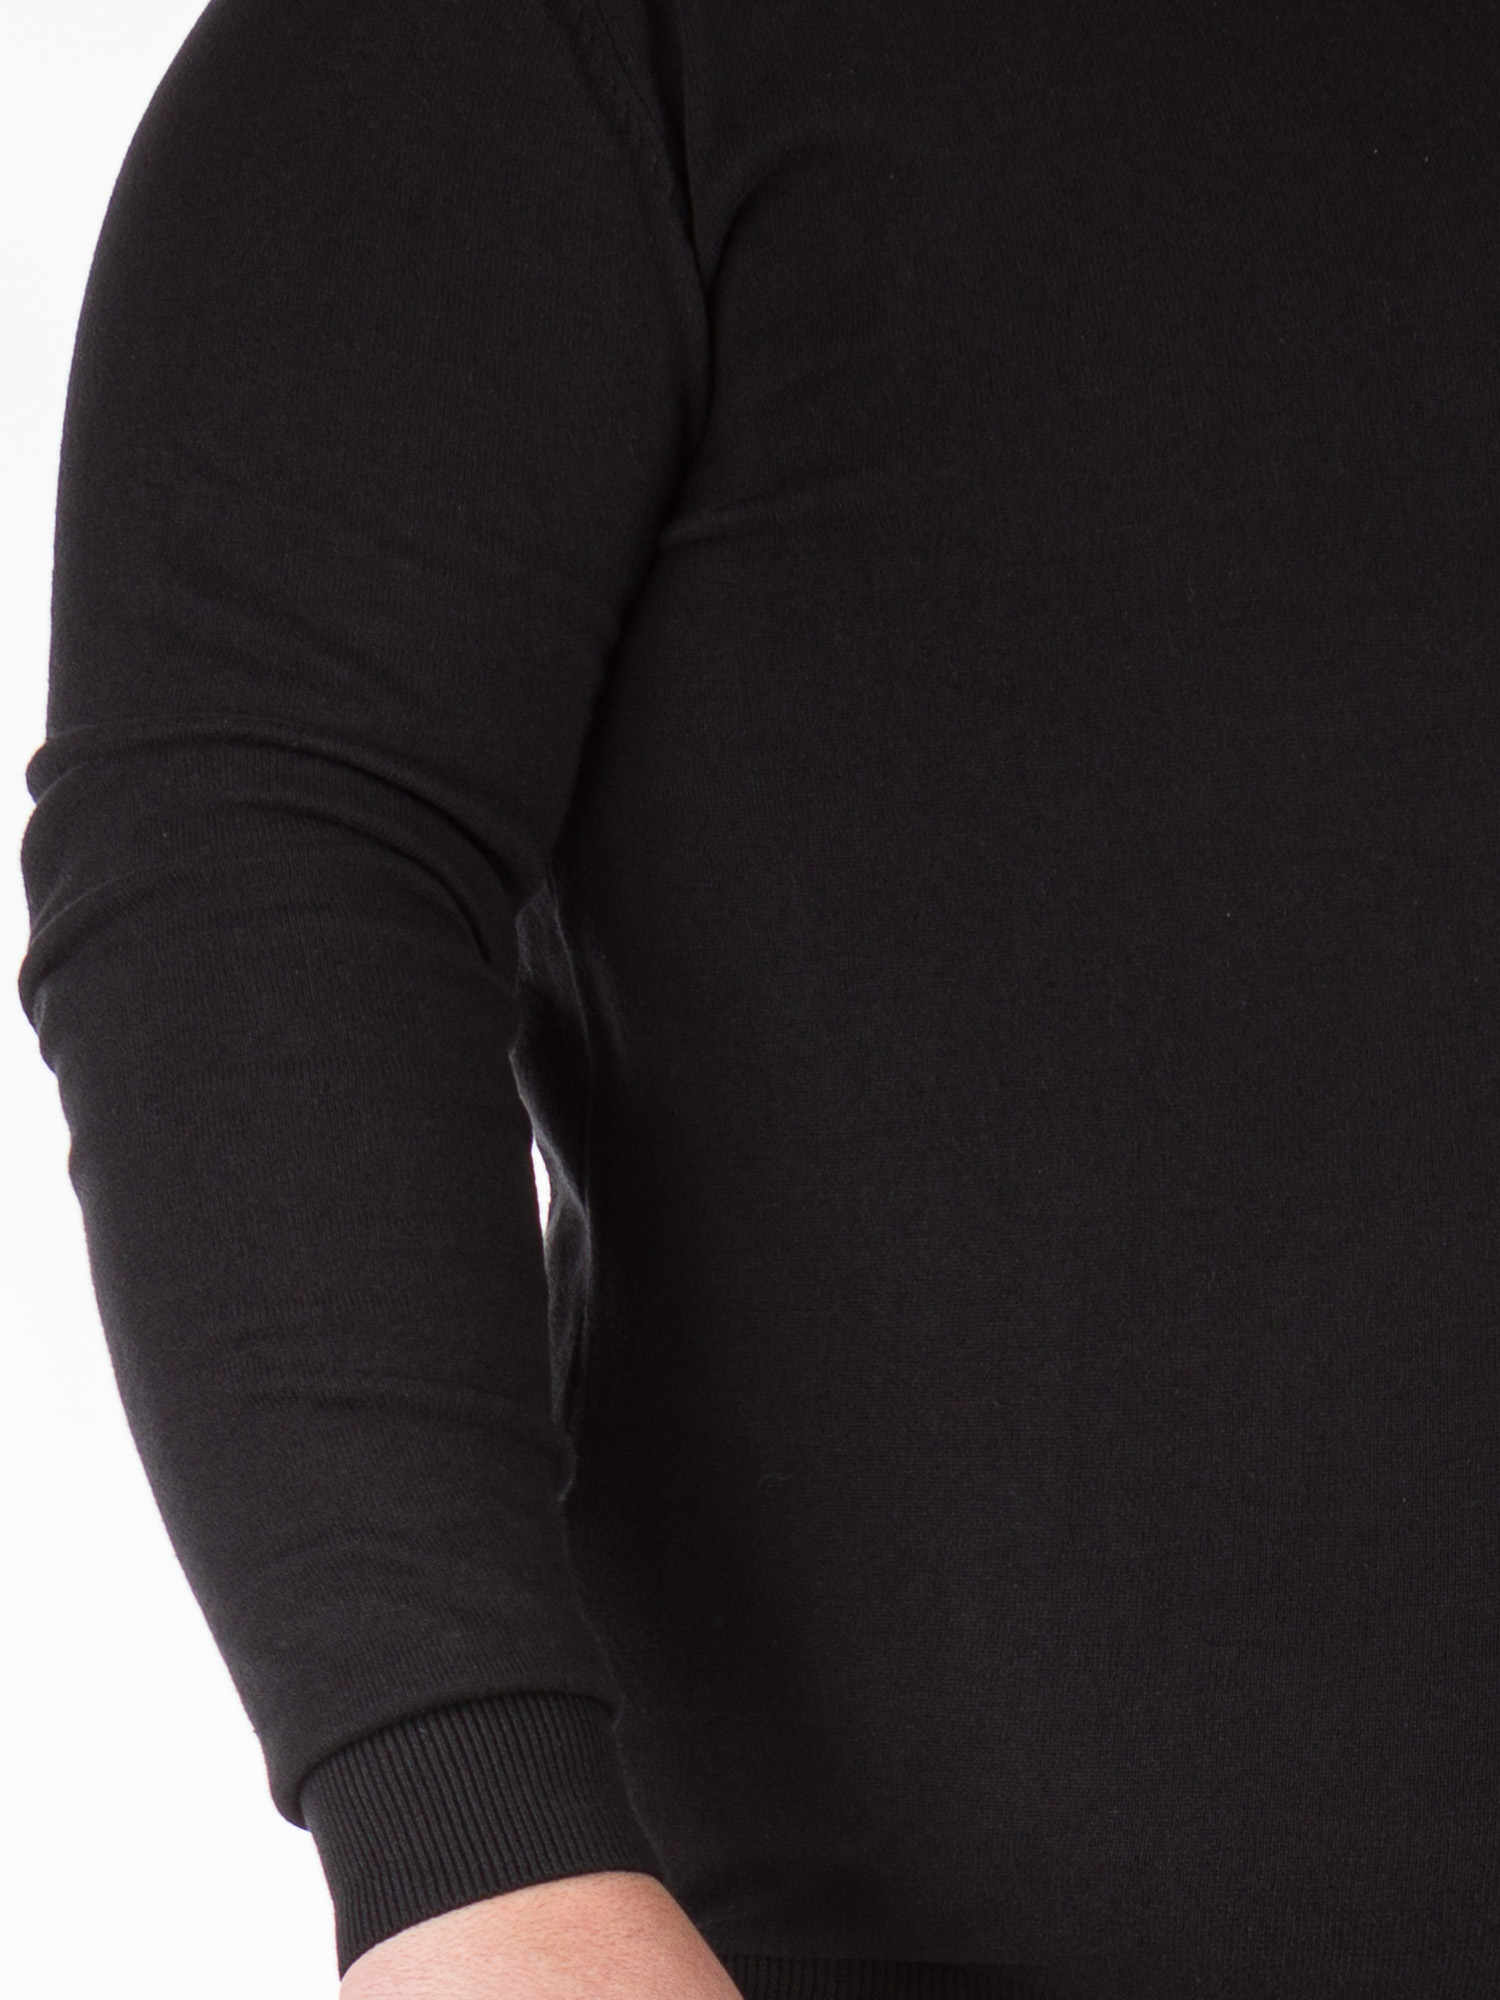 Πλεκτή Ανδρική Μπλούζα Plus Size - Μαύρο